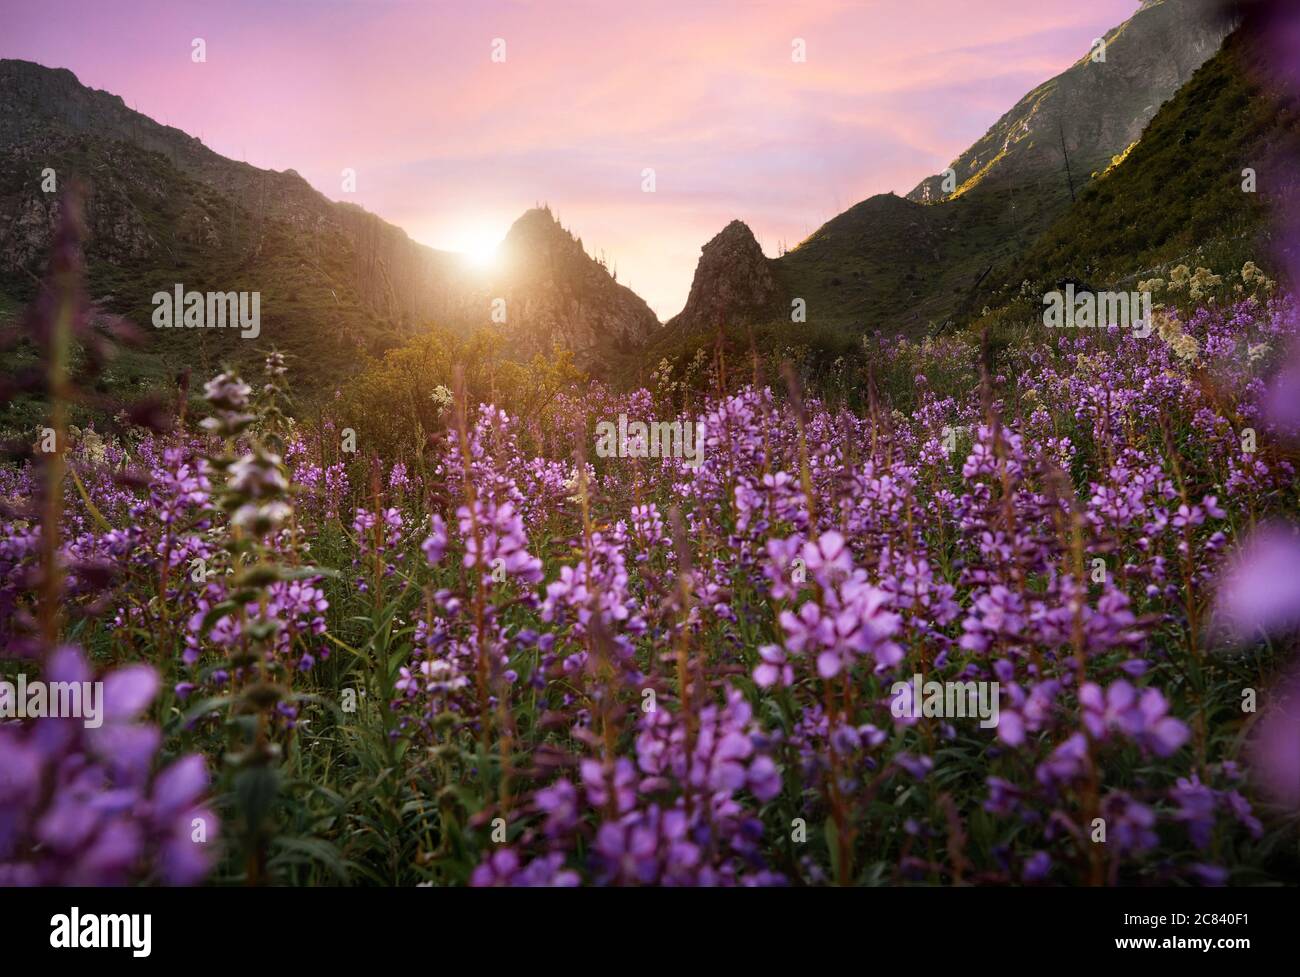 Hermoso paisaje del valle de montaña y prado alpino con flores de color púrpura en primer plano. Concepto de senderismo y al aire libre Foto de stock